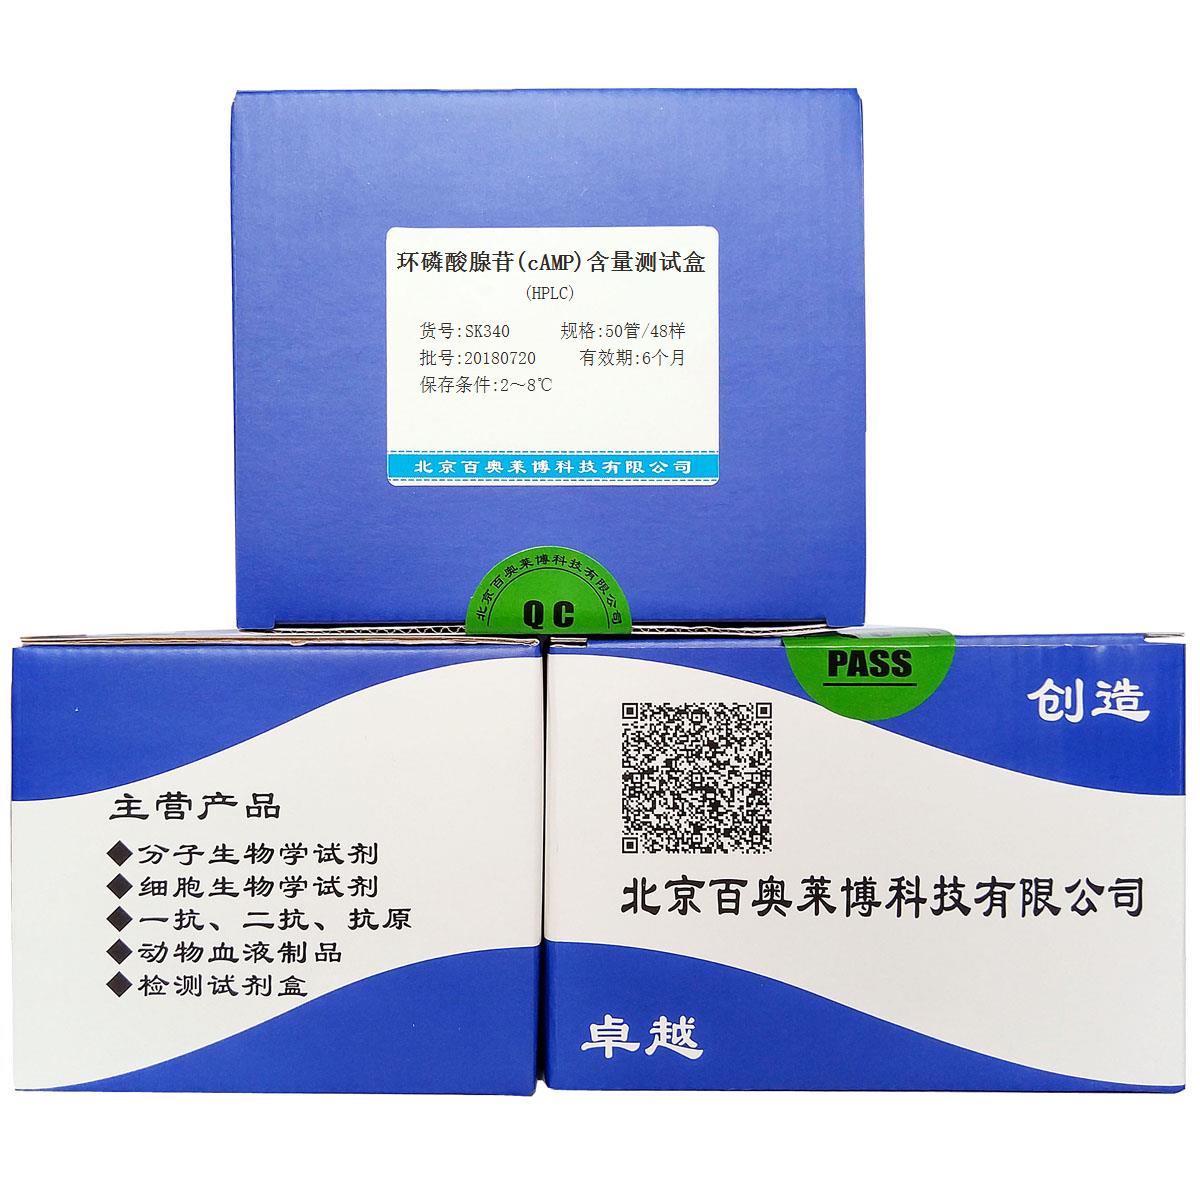 环磷酸腺苷(cAMP)含量测试盒(HPLC)